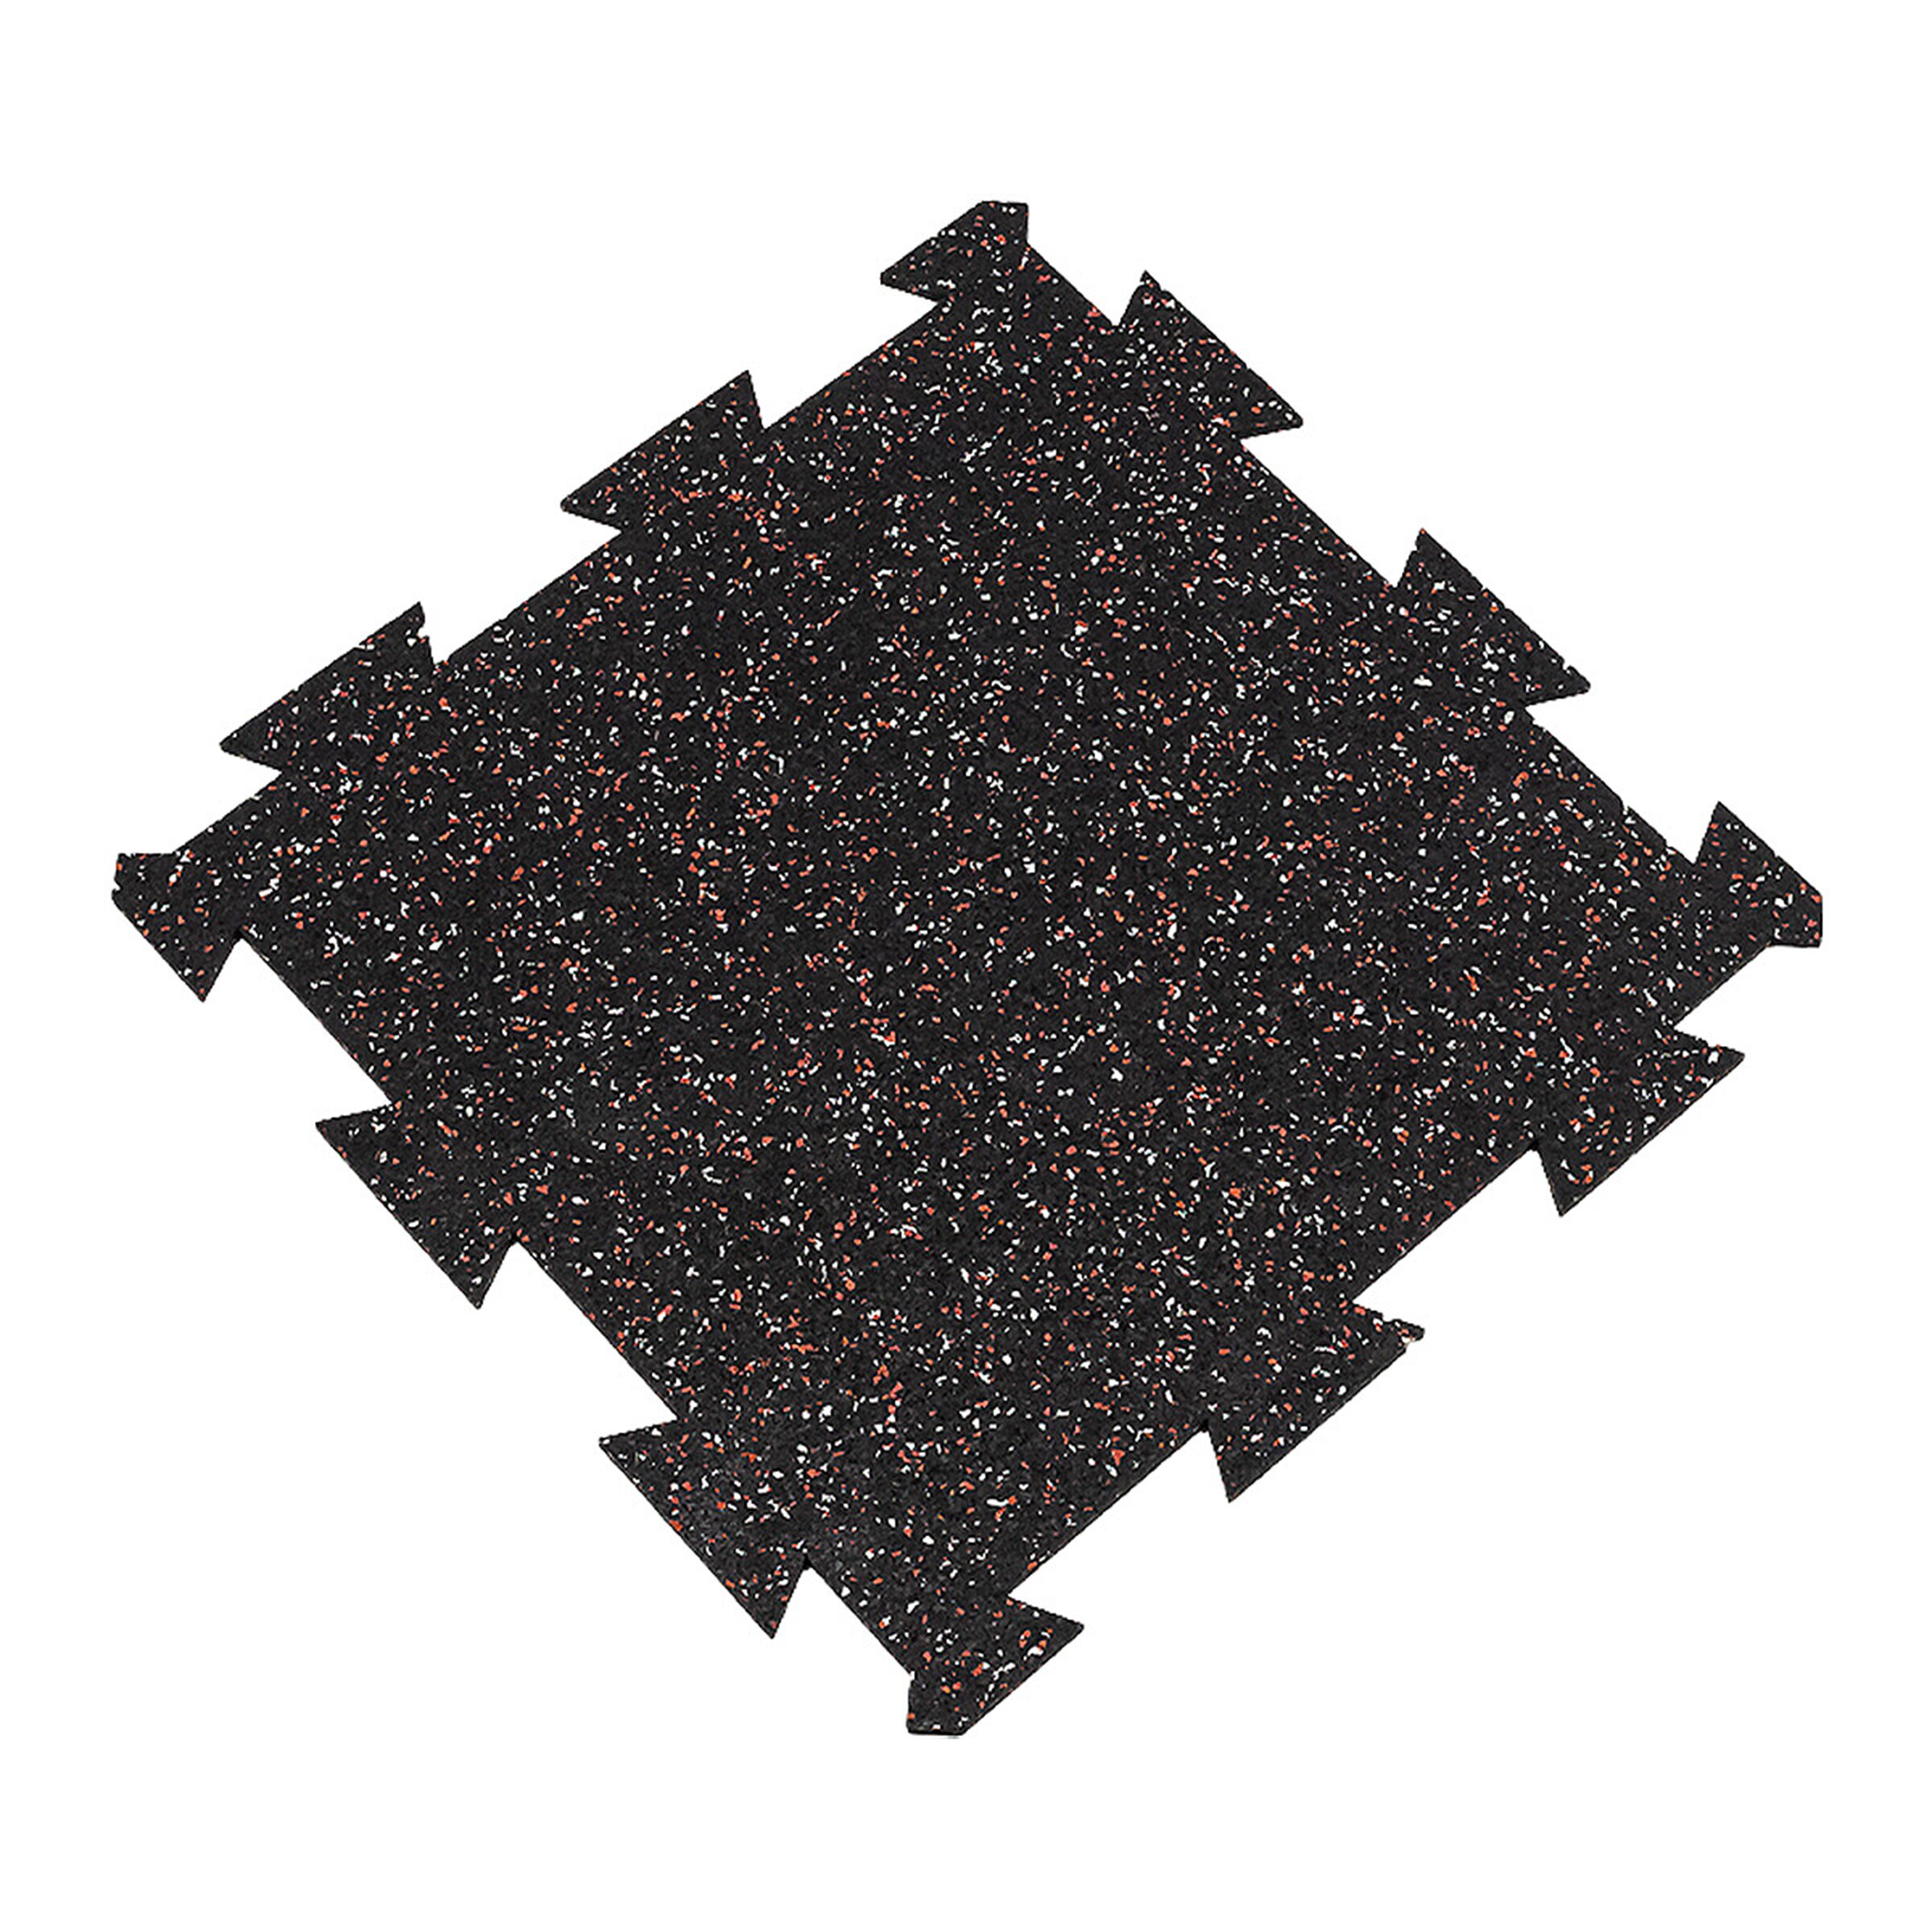 Čierno-bielo-červená gumová modulová puzzle dlažba (stred) FLOMA FitFlo SF1050 - dĺžka 50 cm, šírka 50 cm, výška 1,6 cm